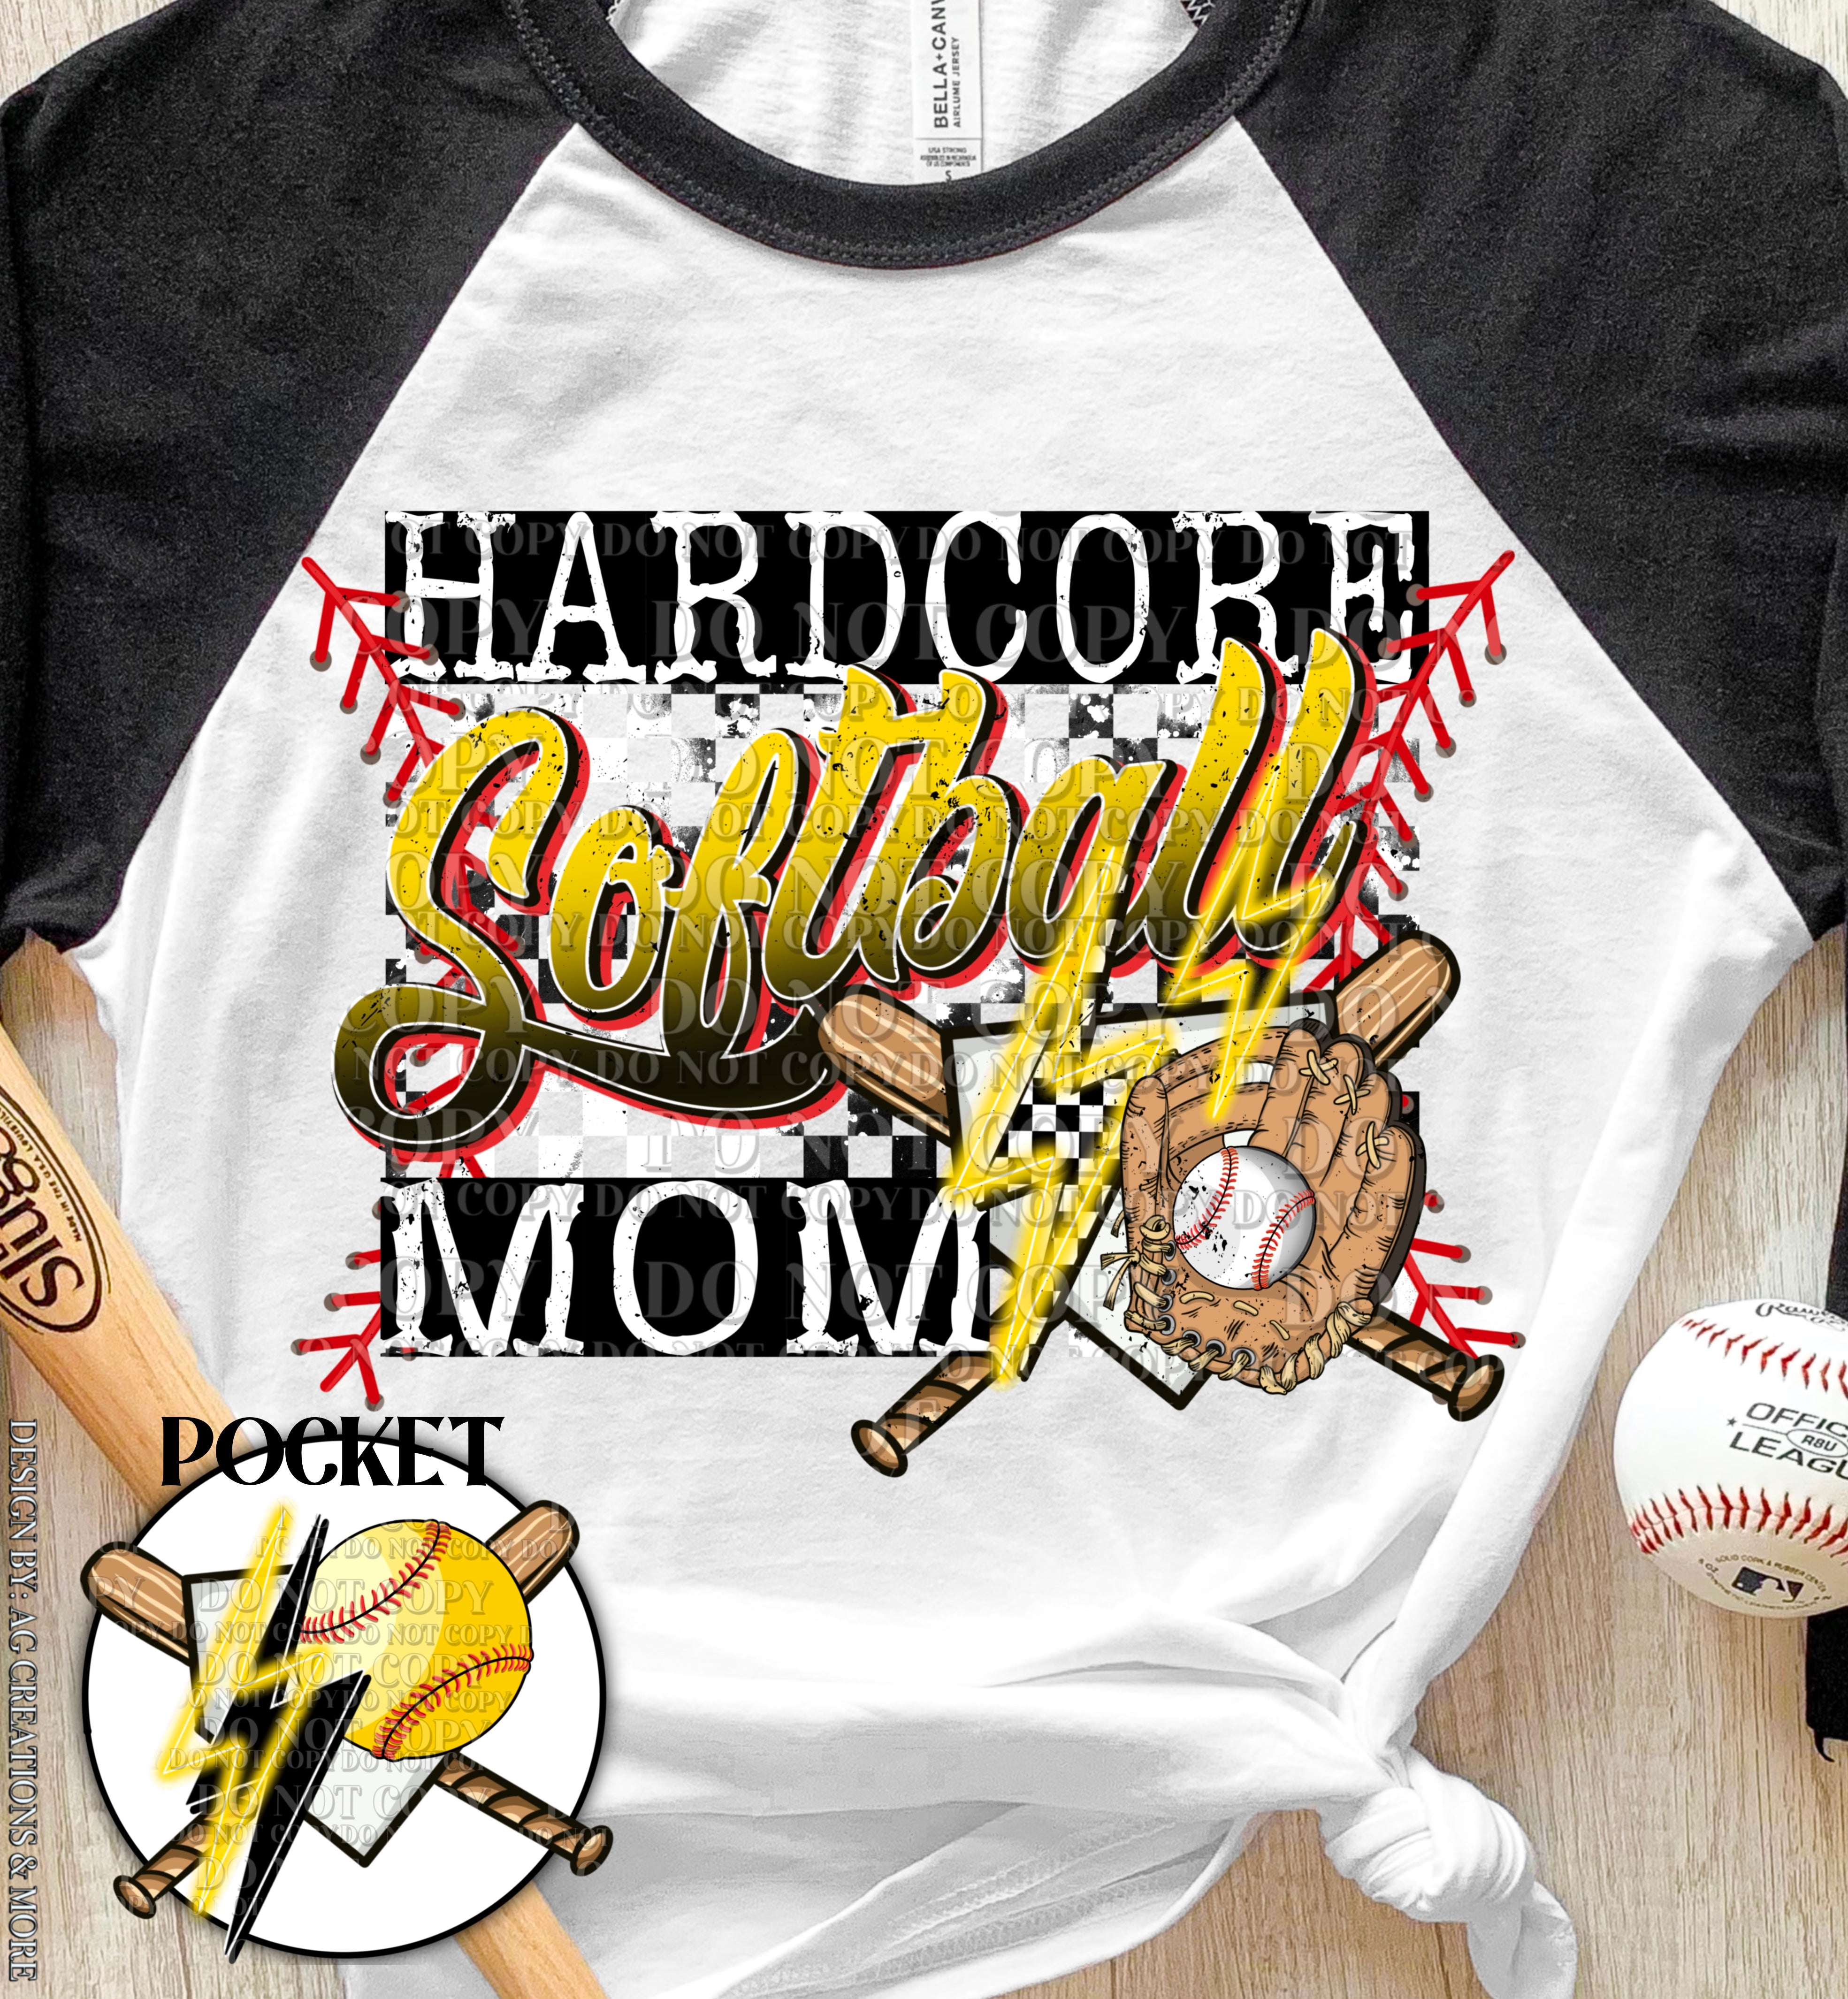 Hard Core Softball Mock up